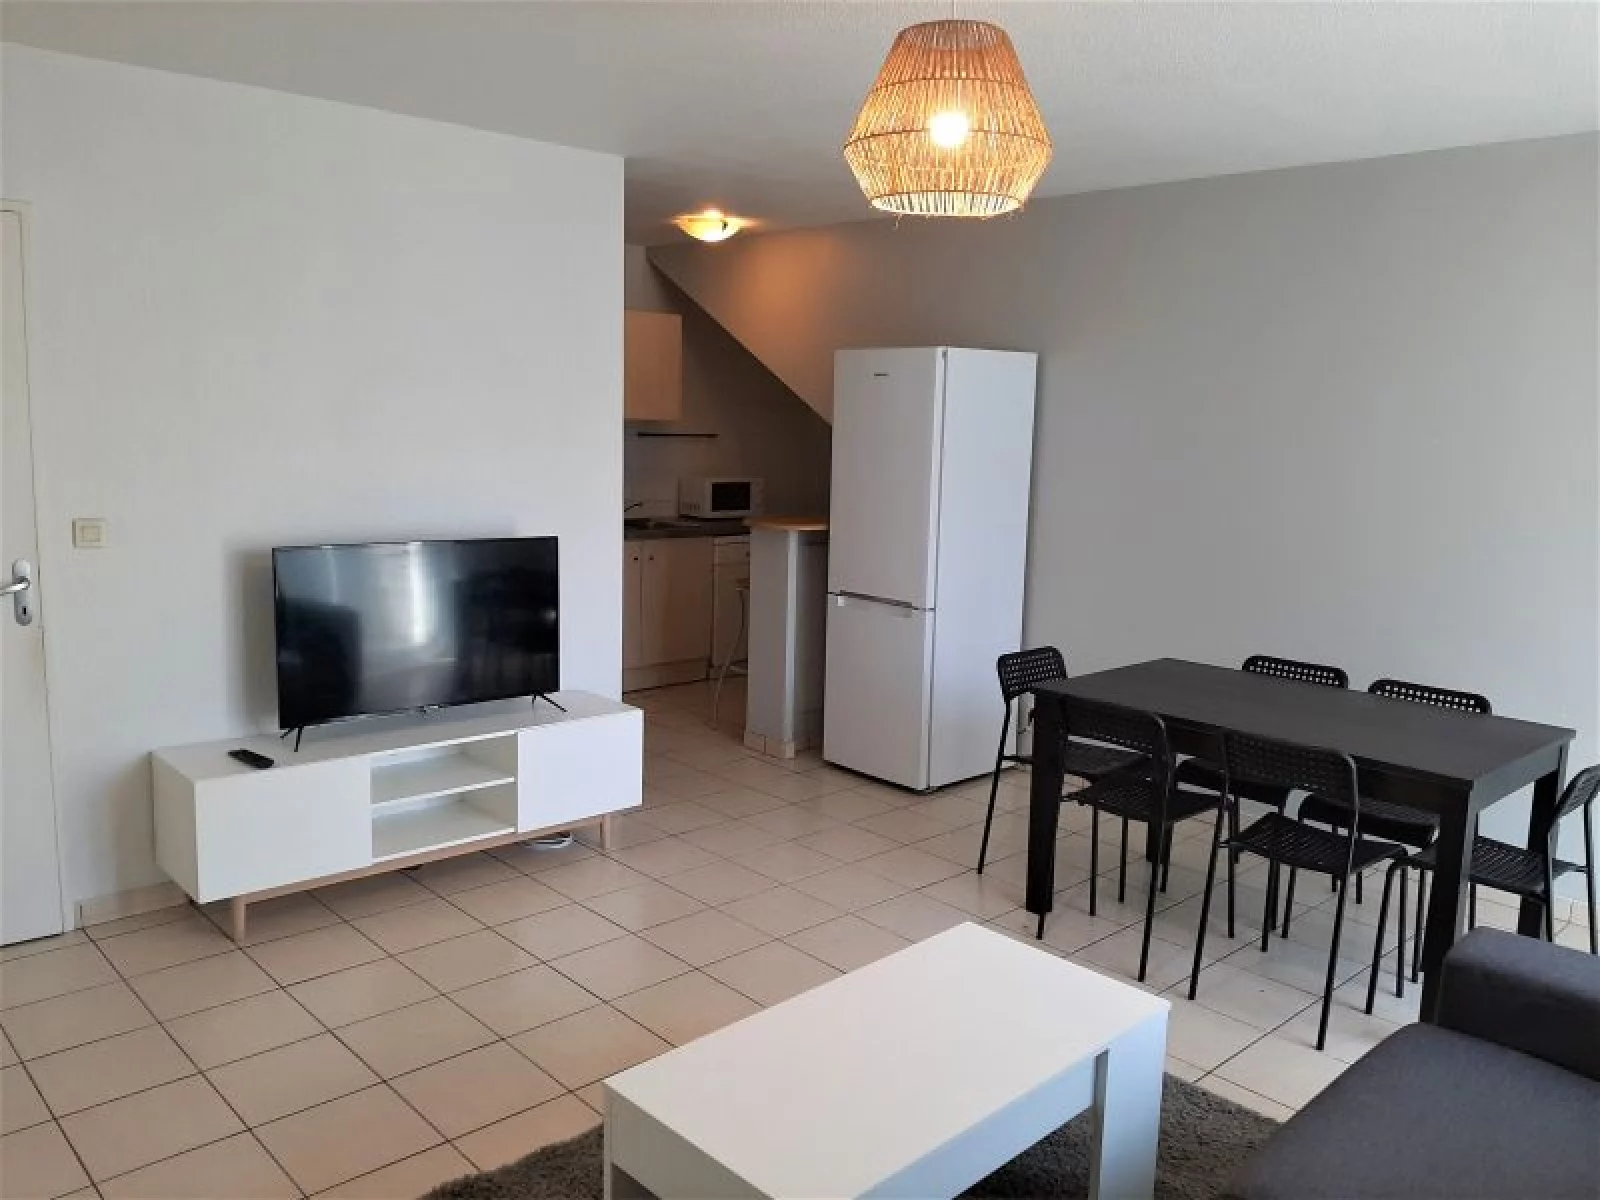 Location appartement meublé duplex 4 pièces 80m² (Paris est - Bry s/ Marne)